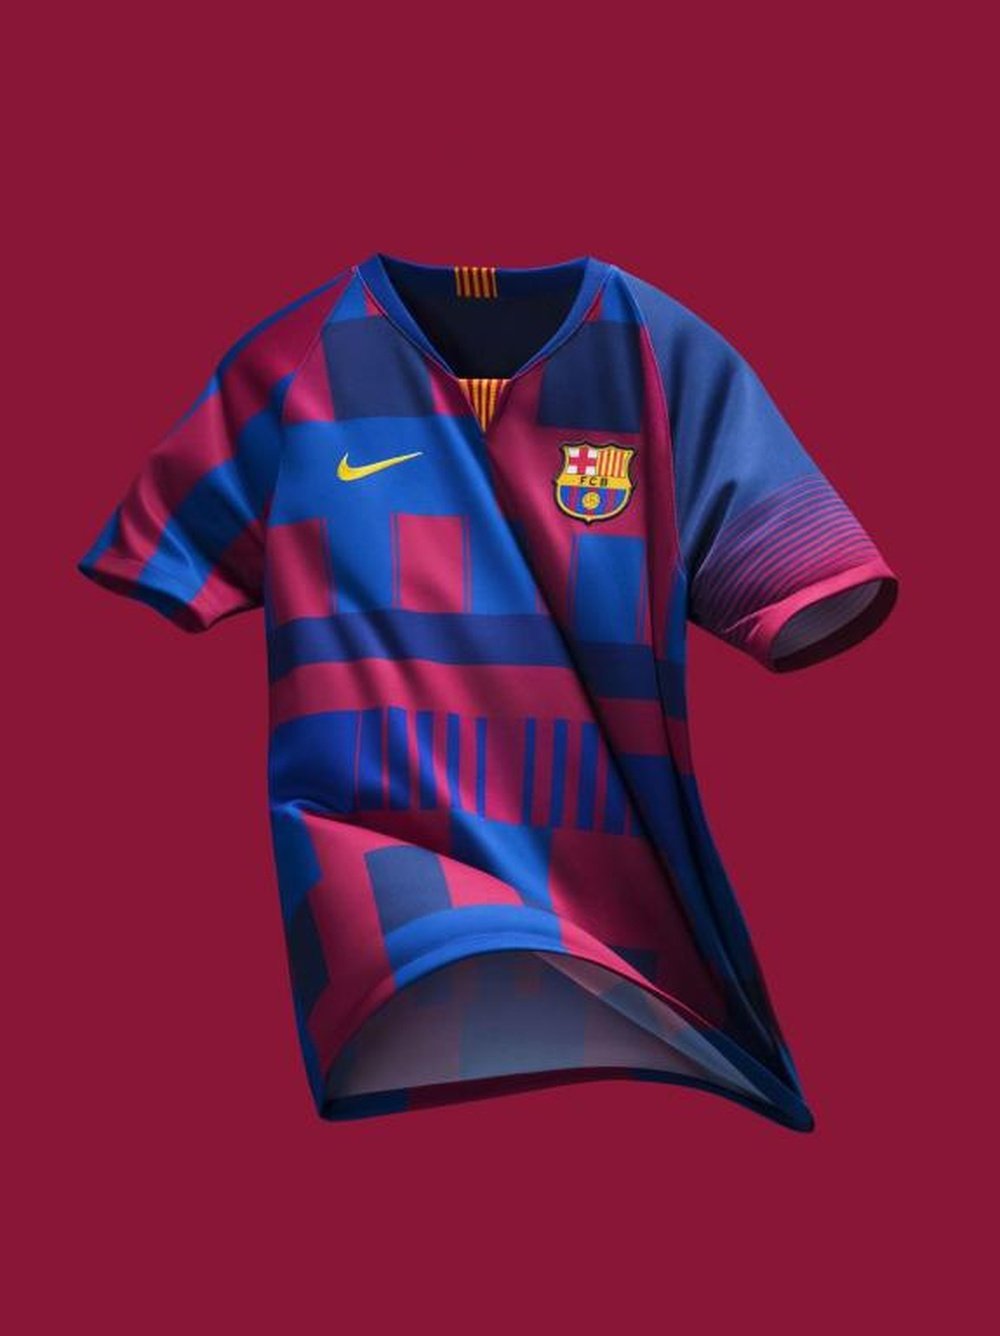 Nike lança uma camisa especial para o Barcelona. Nike